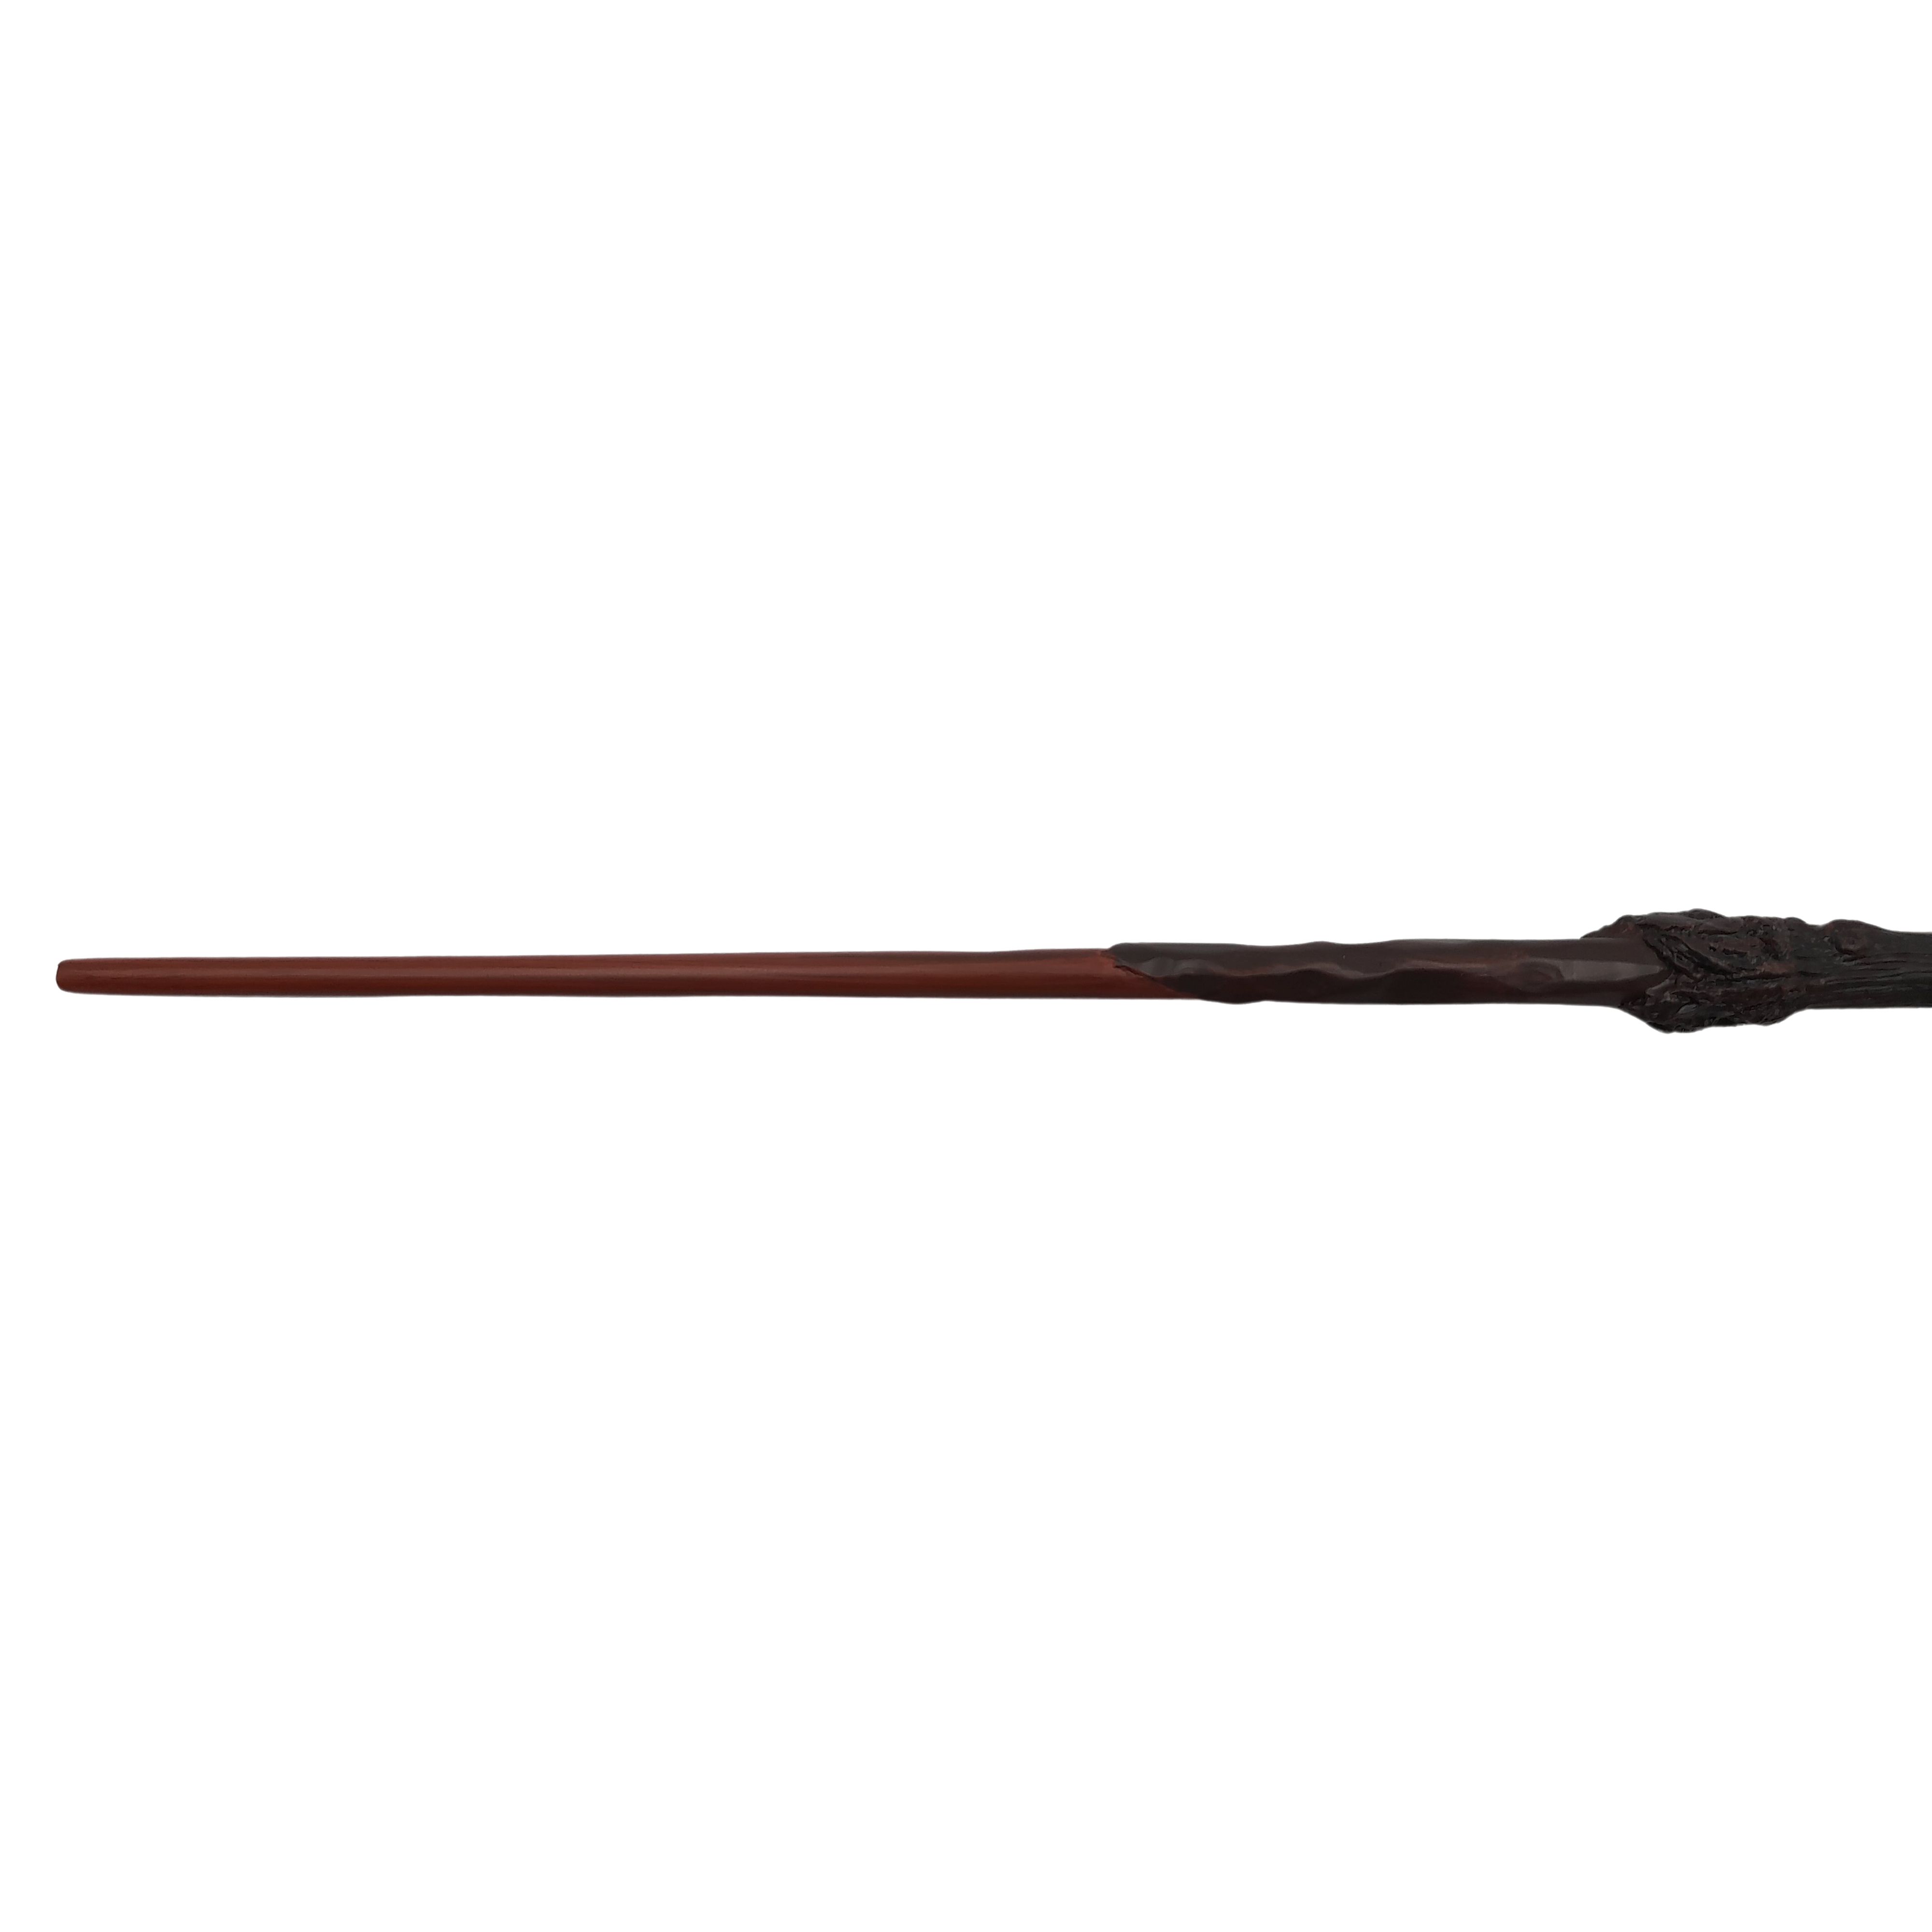 Bagheta colectie IdeallStore®, Harry Potter, insertii metalice, 36 cm